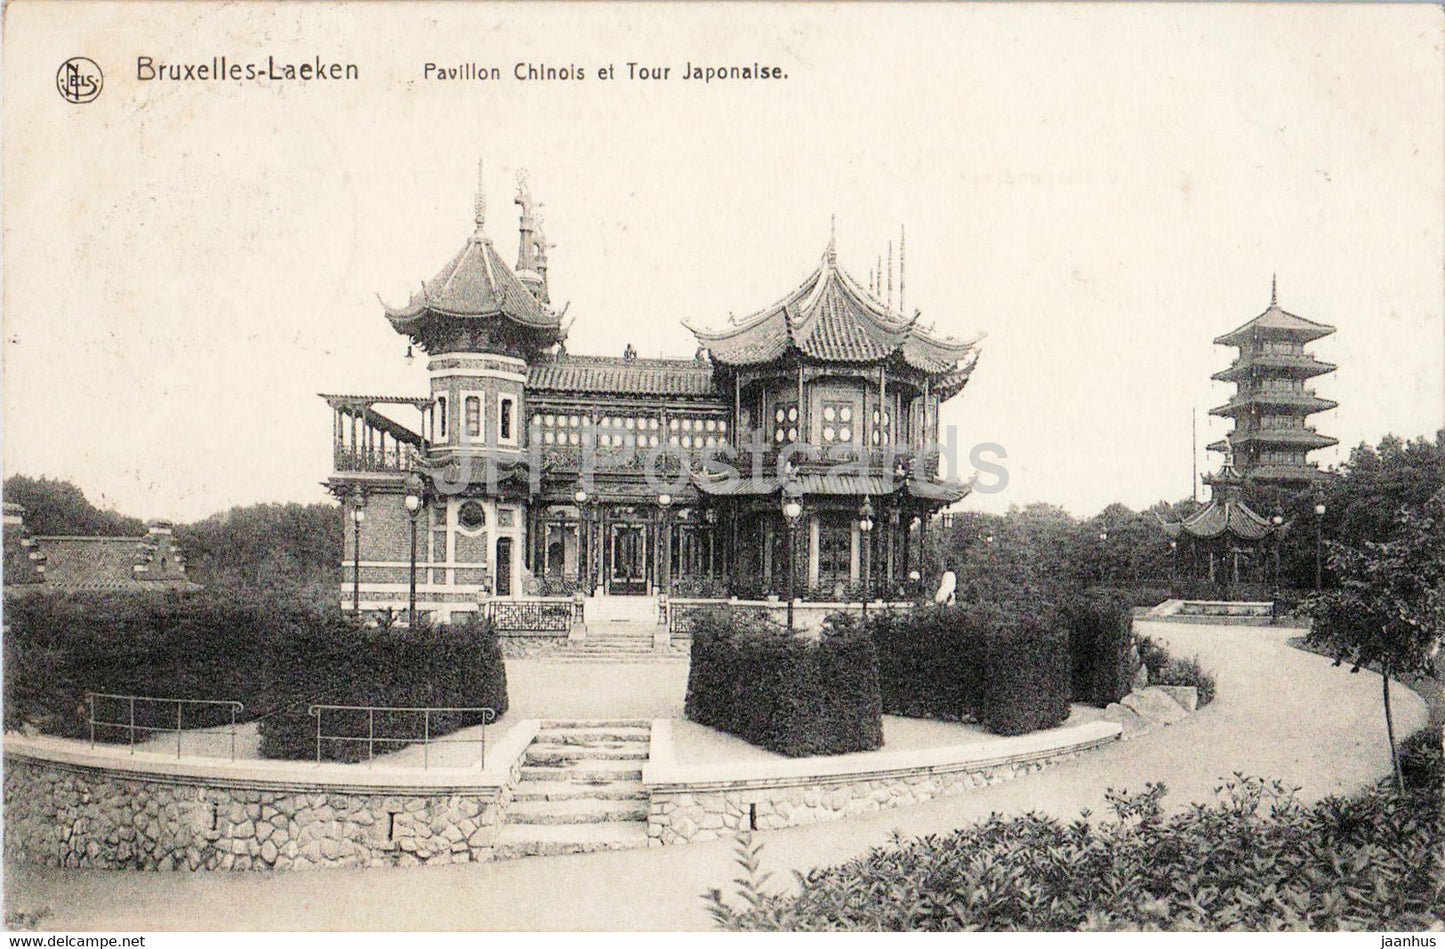 Bruxelles Laeken - Brussels - Pavillon Chinois et Tour Japonaise - 7 - old postcard - 1911 - Belgium - used - JH Postcards